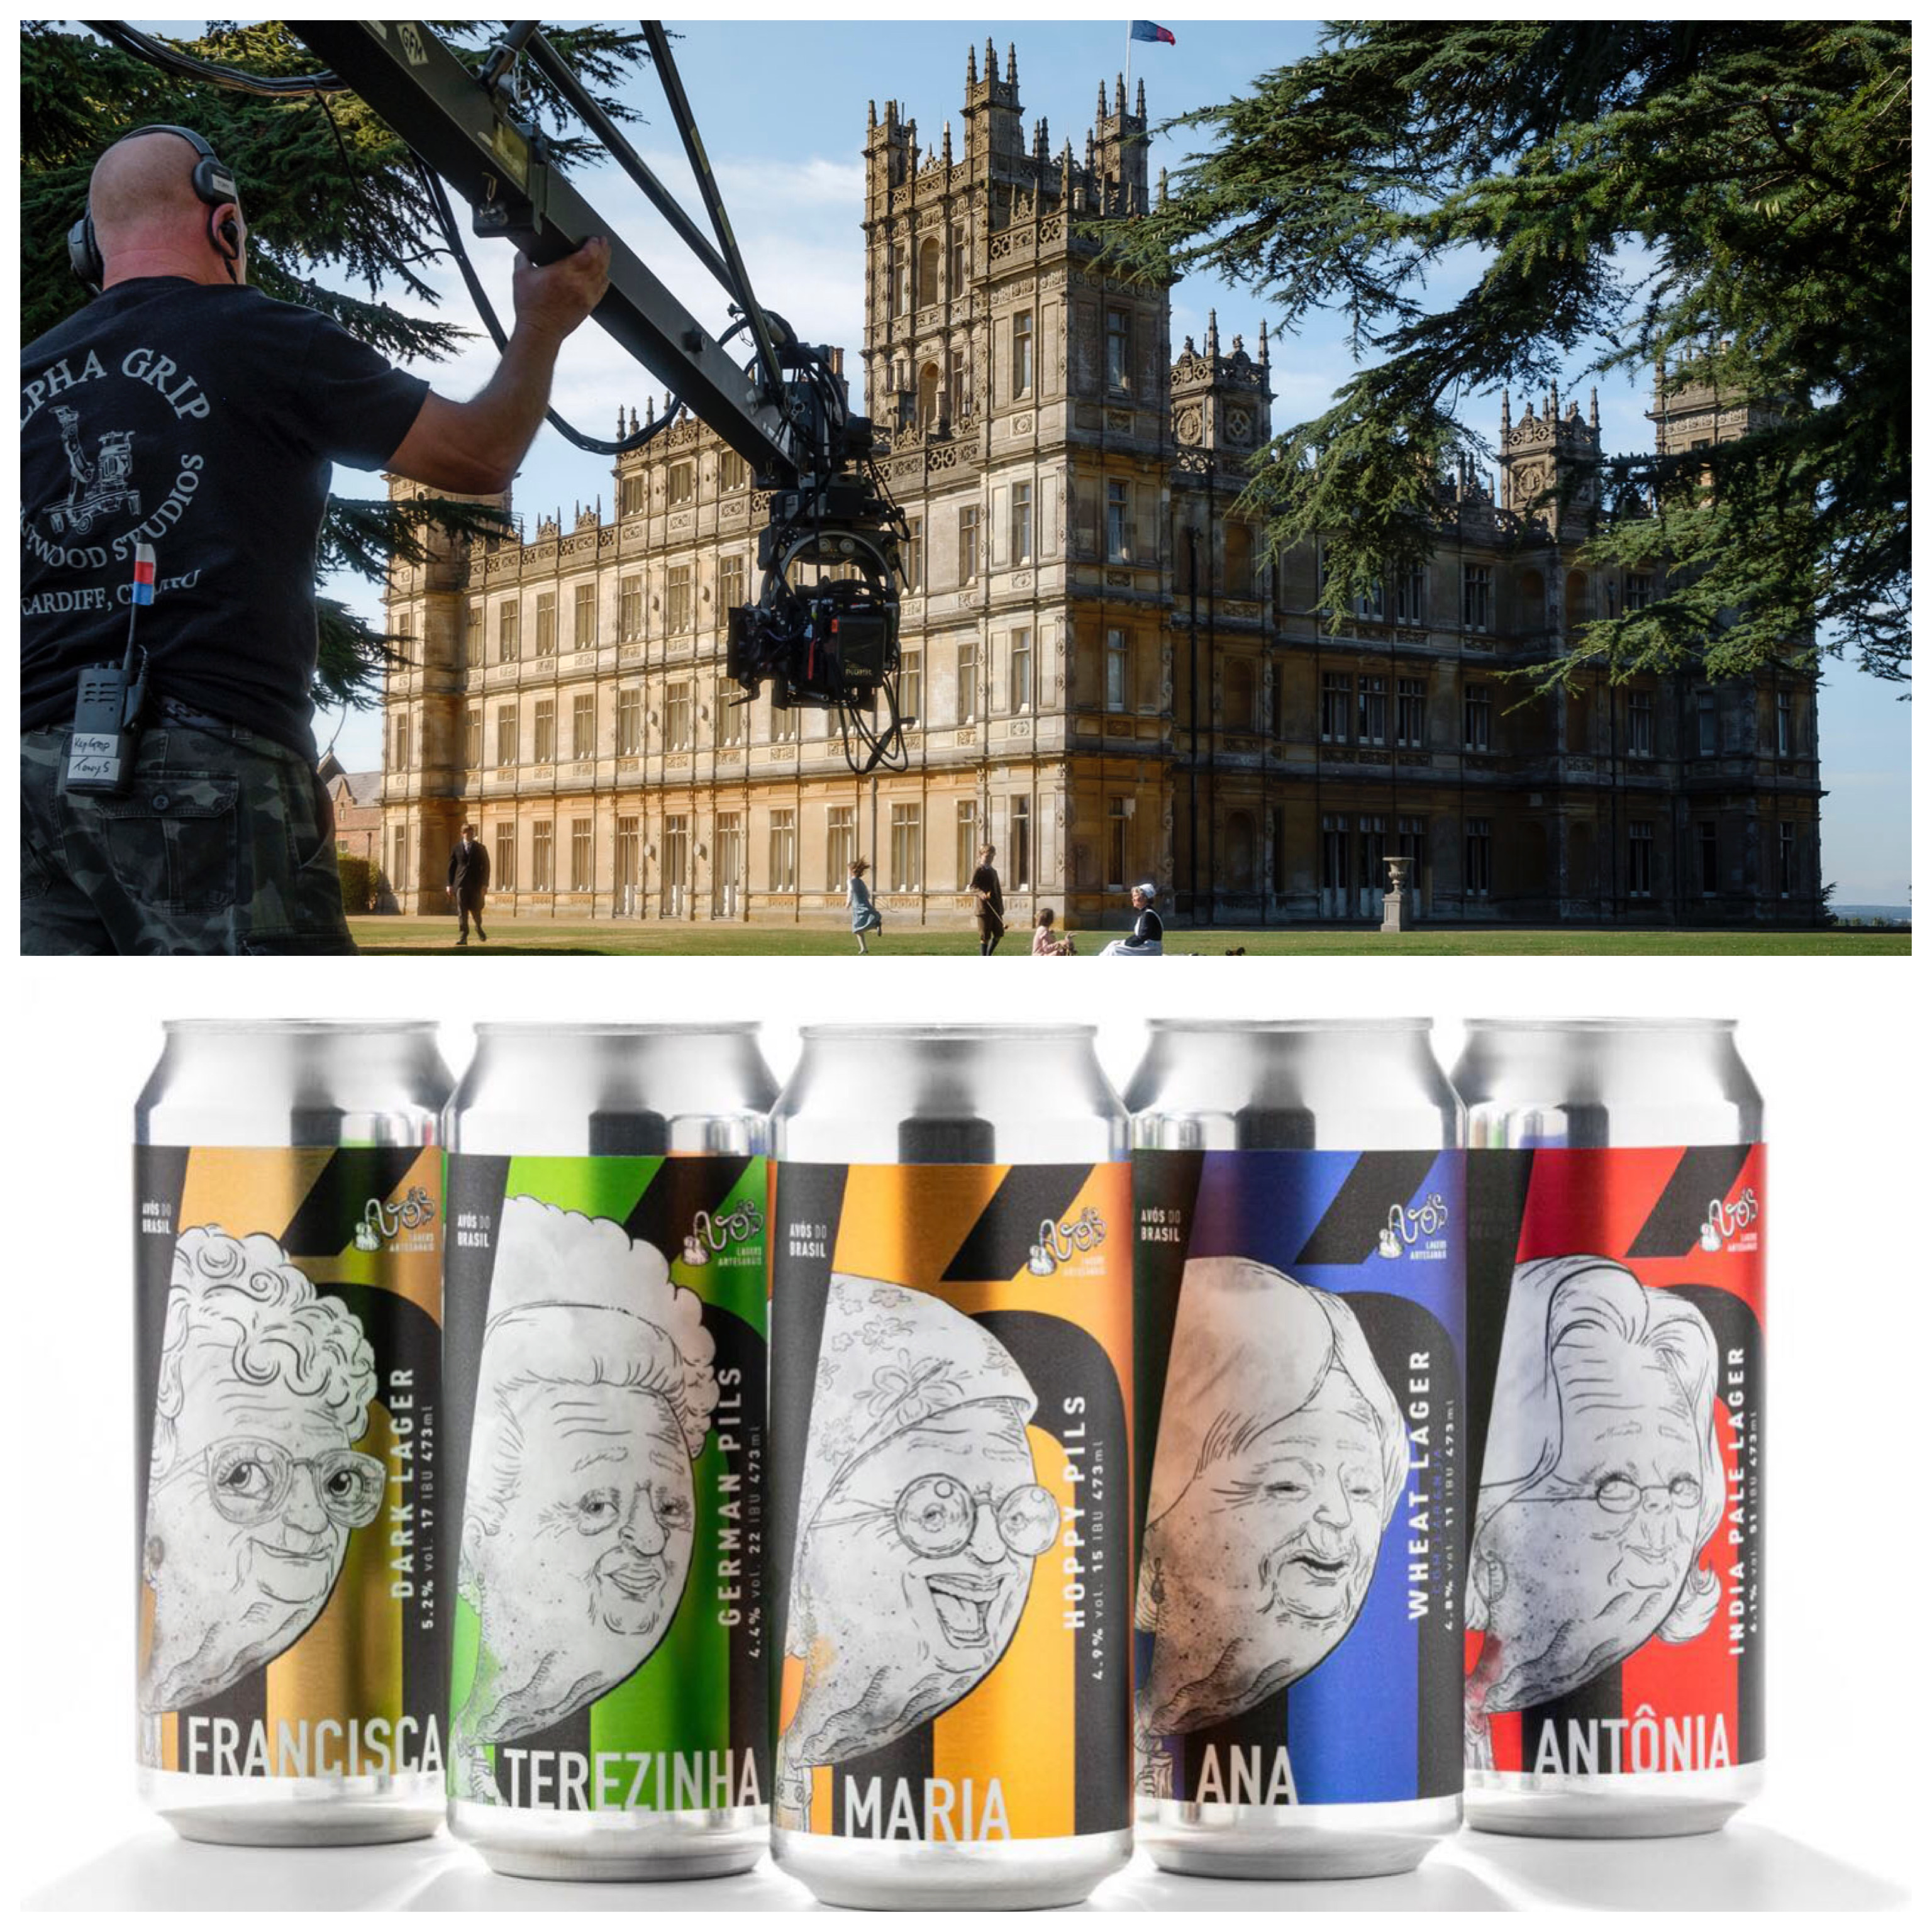 Filme Downton Abbey e Cervejas Avós são os destaques desta semana - Foto: Montagem com Universal Pictures France e Divulgação/Cervejaria Avós